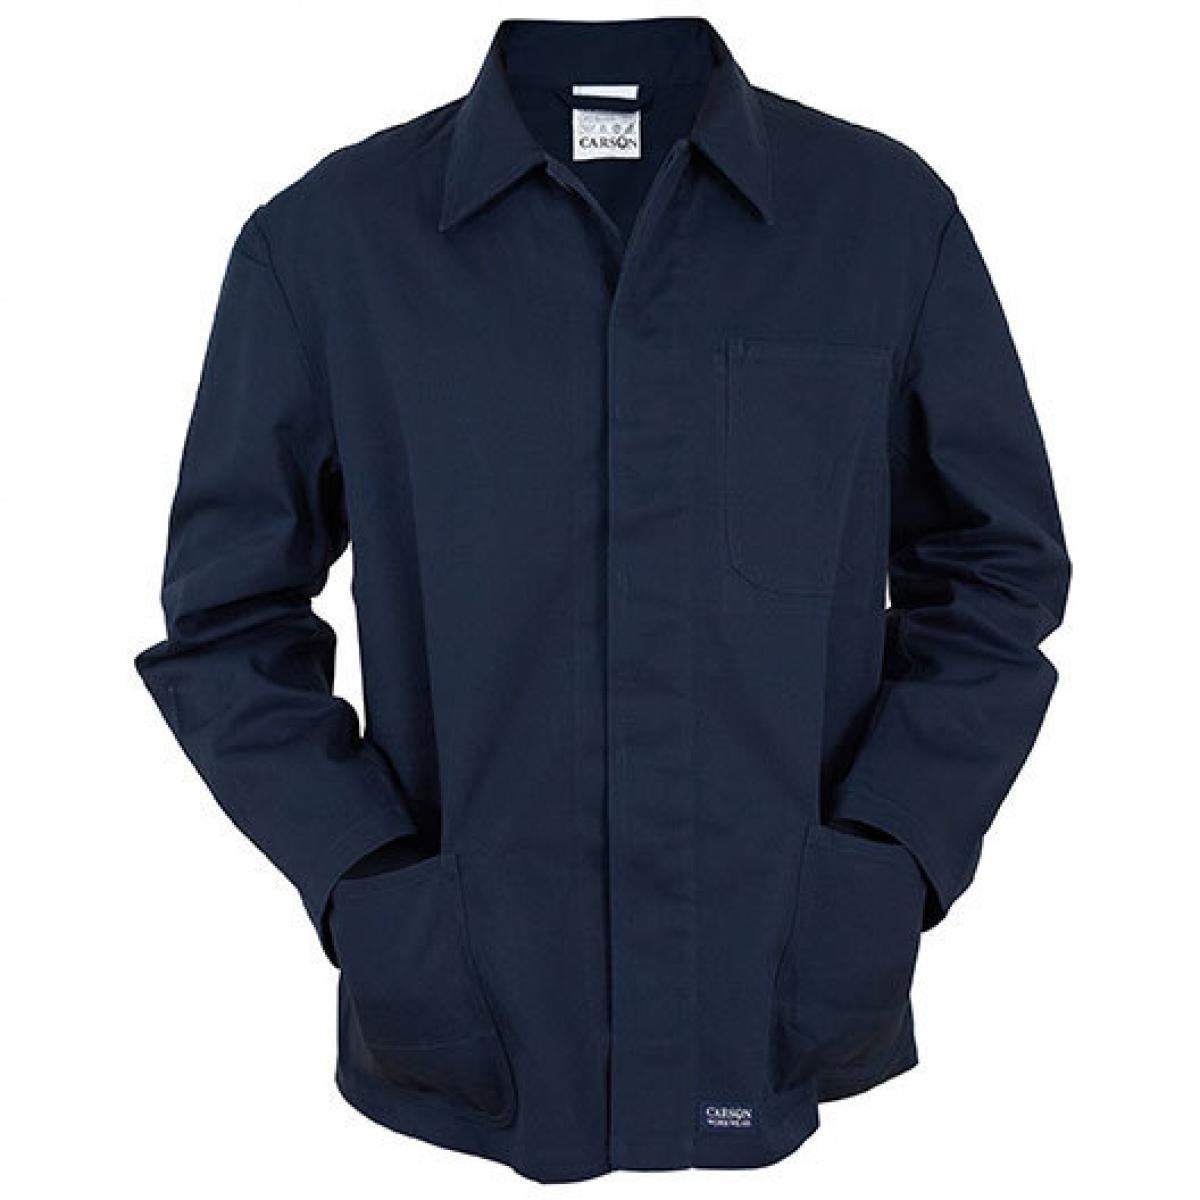 Hersteller: Carson Classic Workwear Herstellernummer: KTH709J Artikelbezeichnung: Herren Classic Long Work Jacket bis 60 Grad waschbar Farbe: Navy